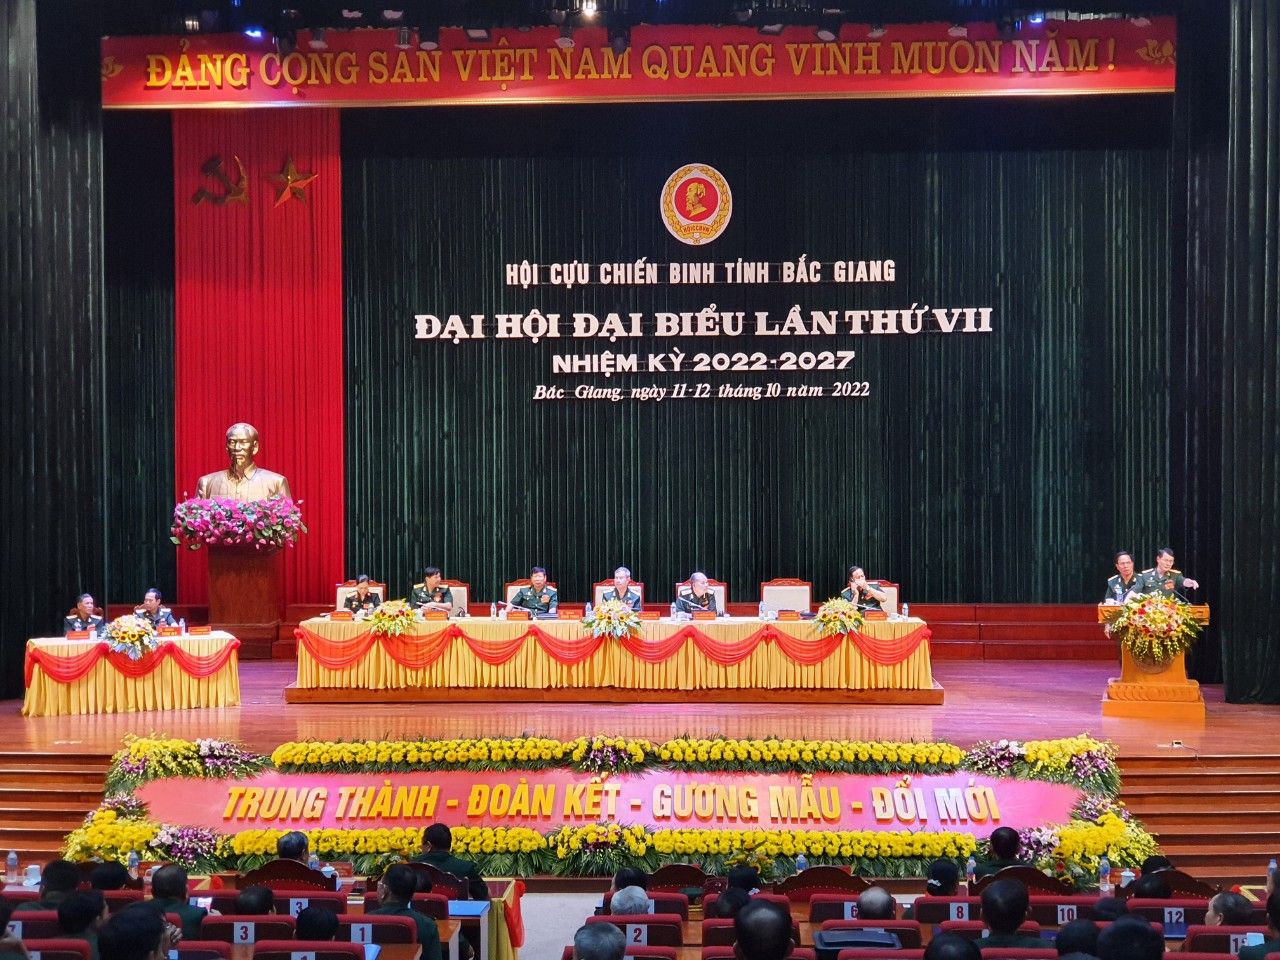 Đại Hội Đại Biểu Hội Cựu chiến binh tỉnh Bắc giang lần thứ VII, nhiệm kỳ 2022 - 2027